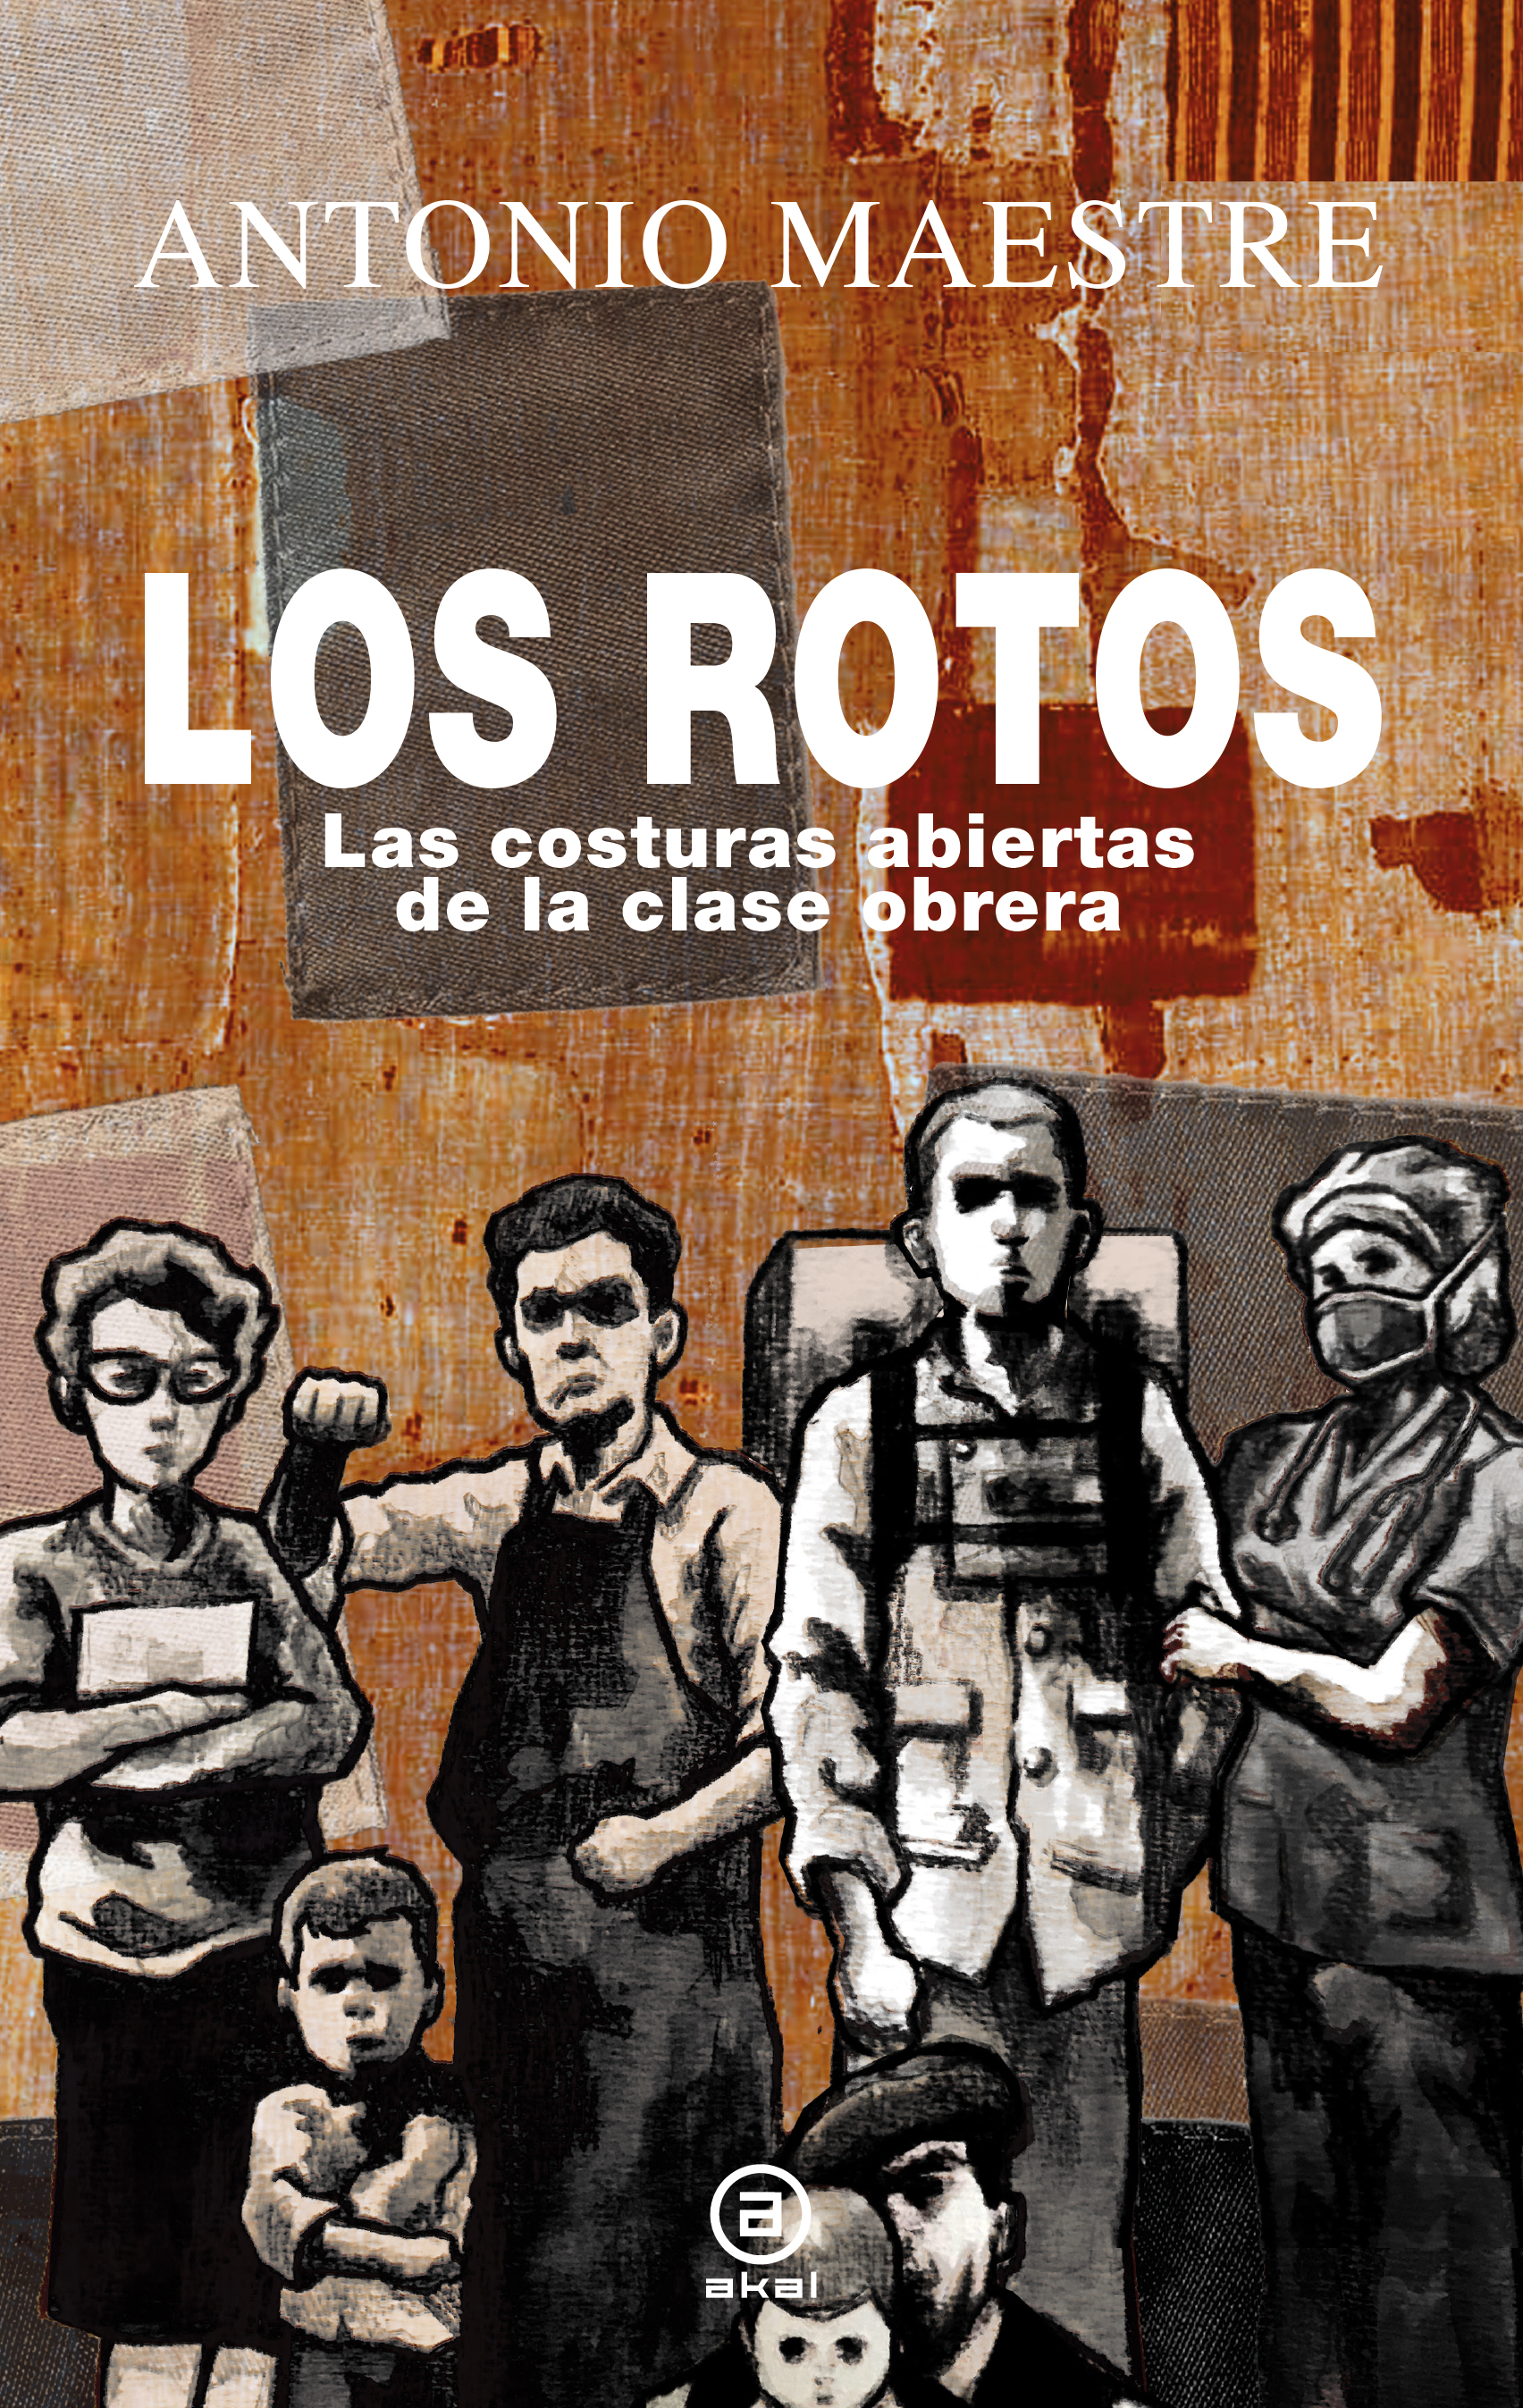 LOS ROTOS - Antonio Maestre